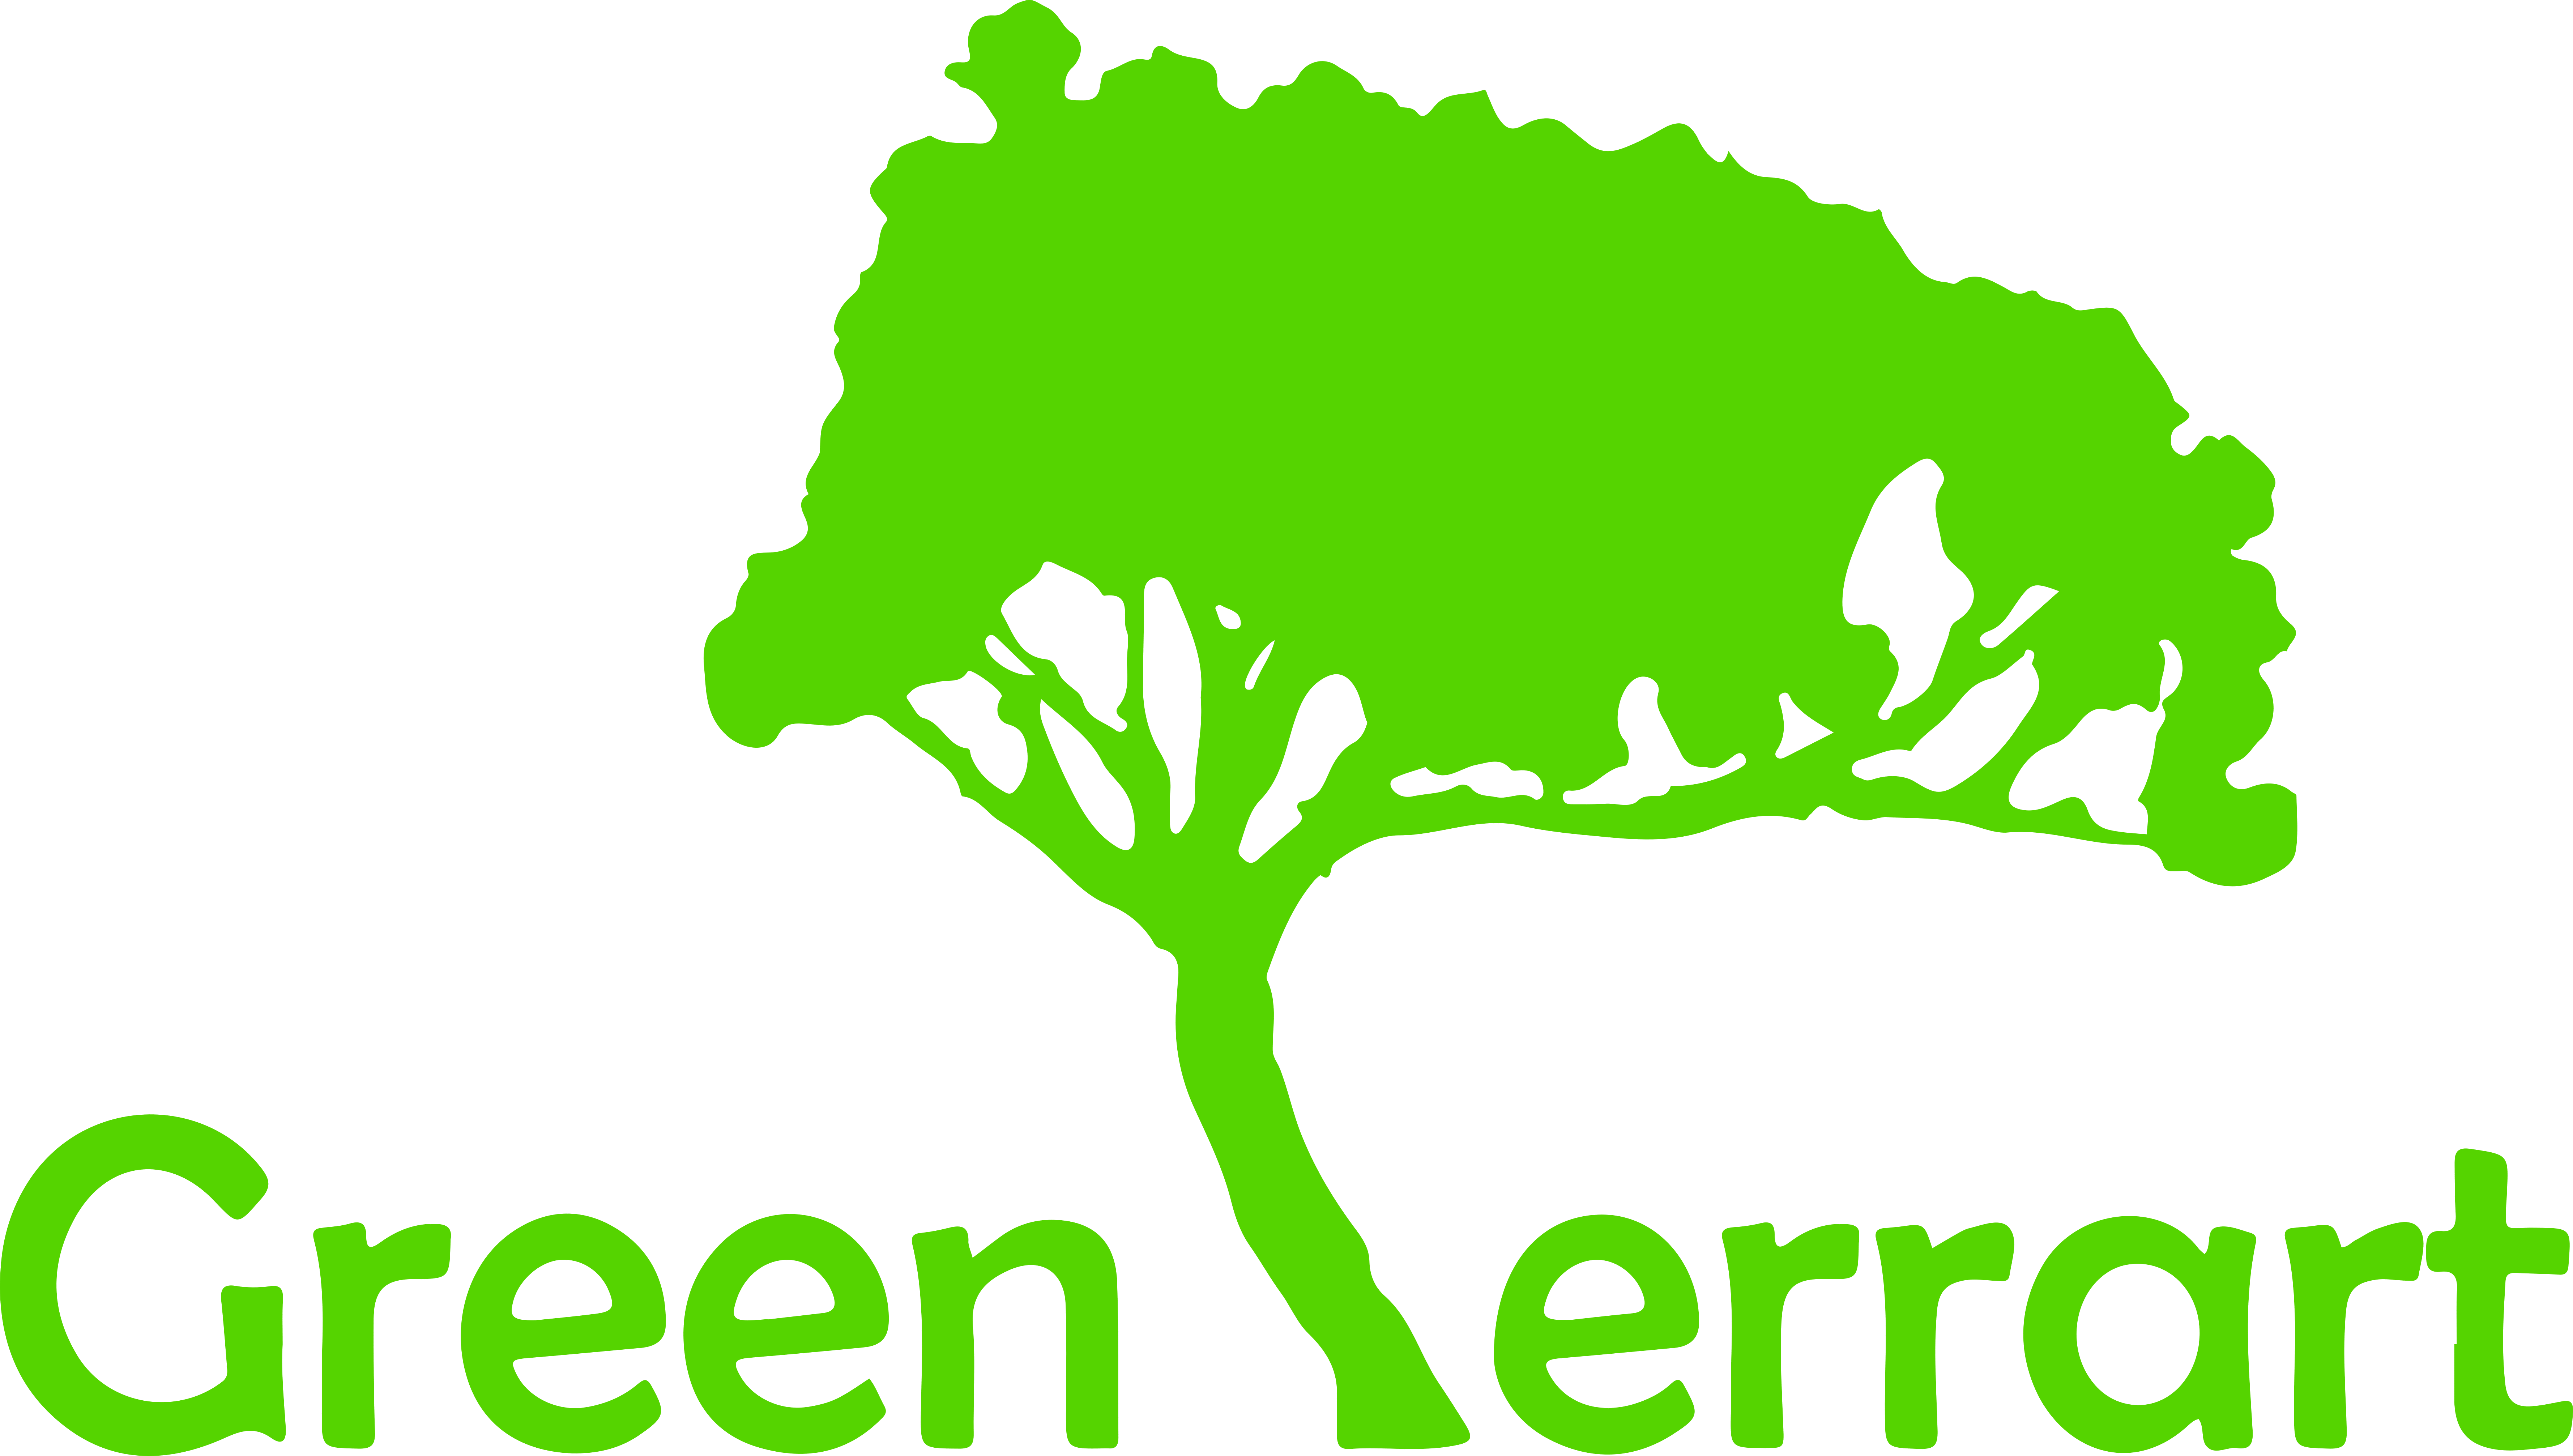 Green Terrart